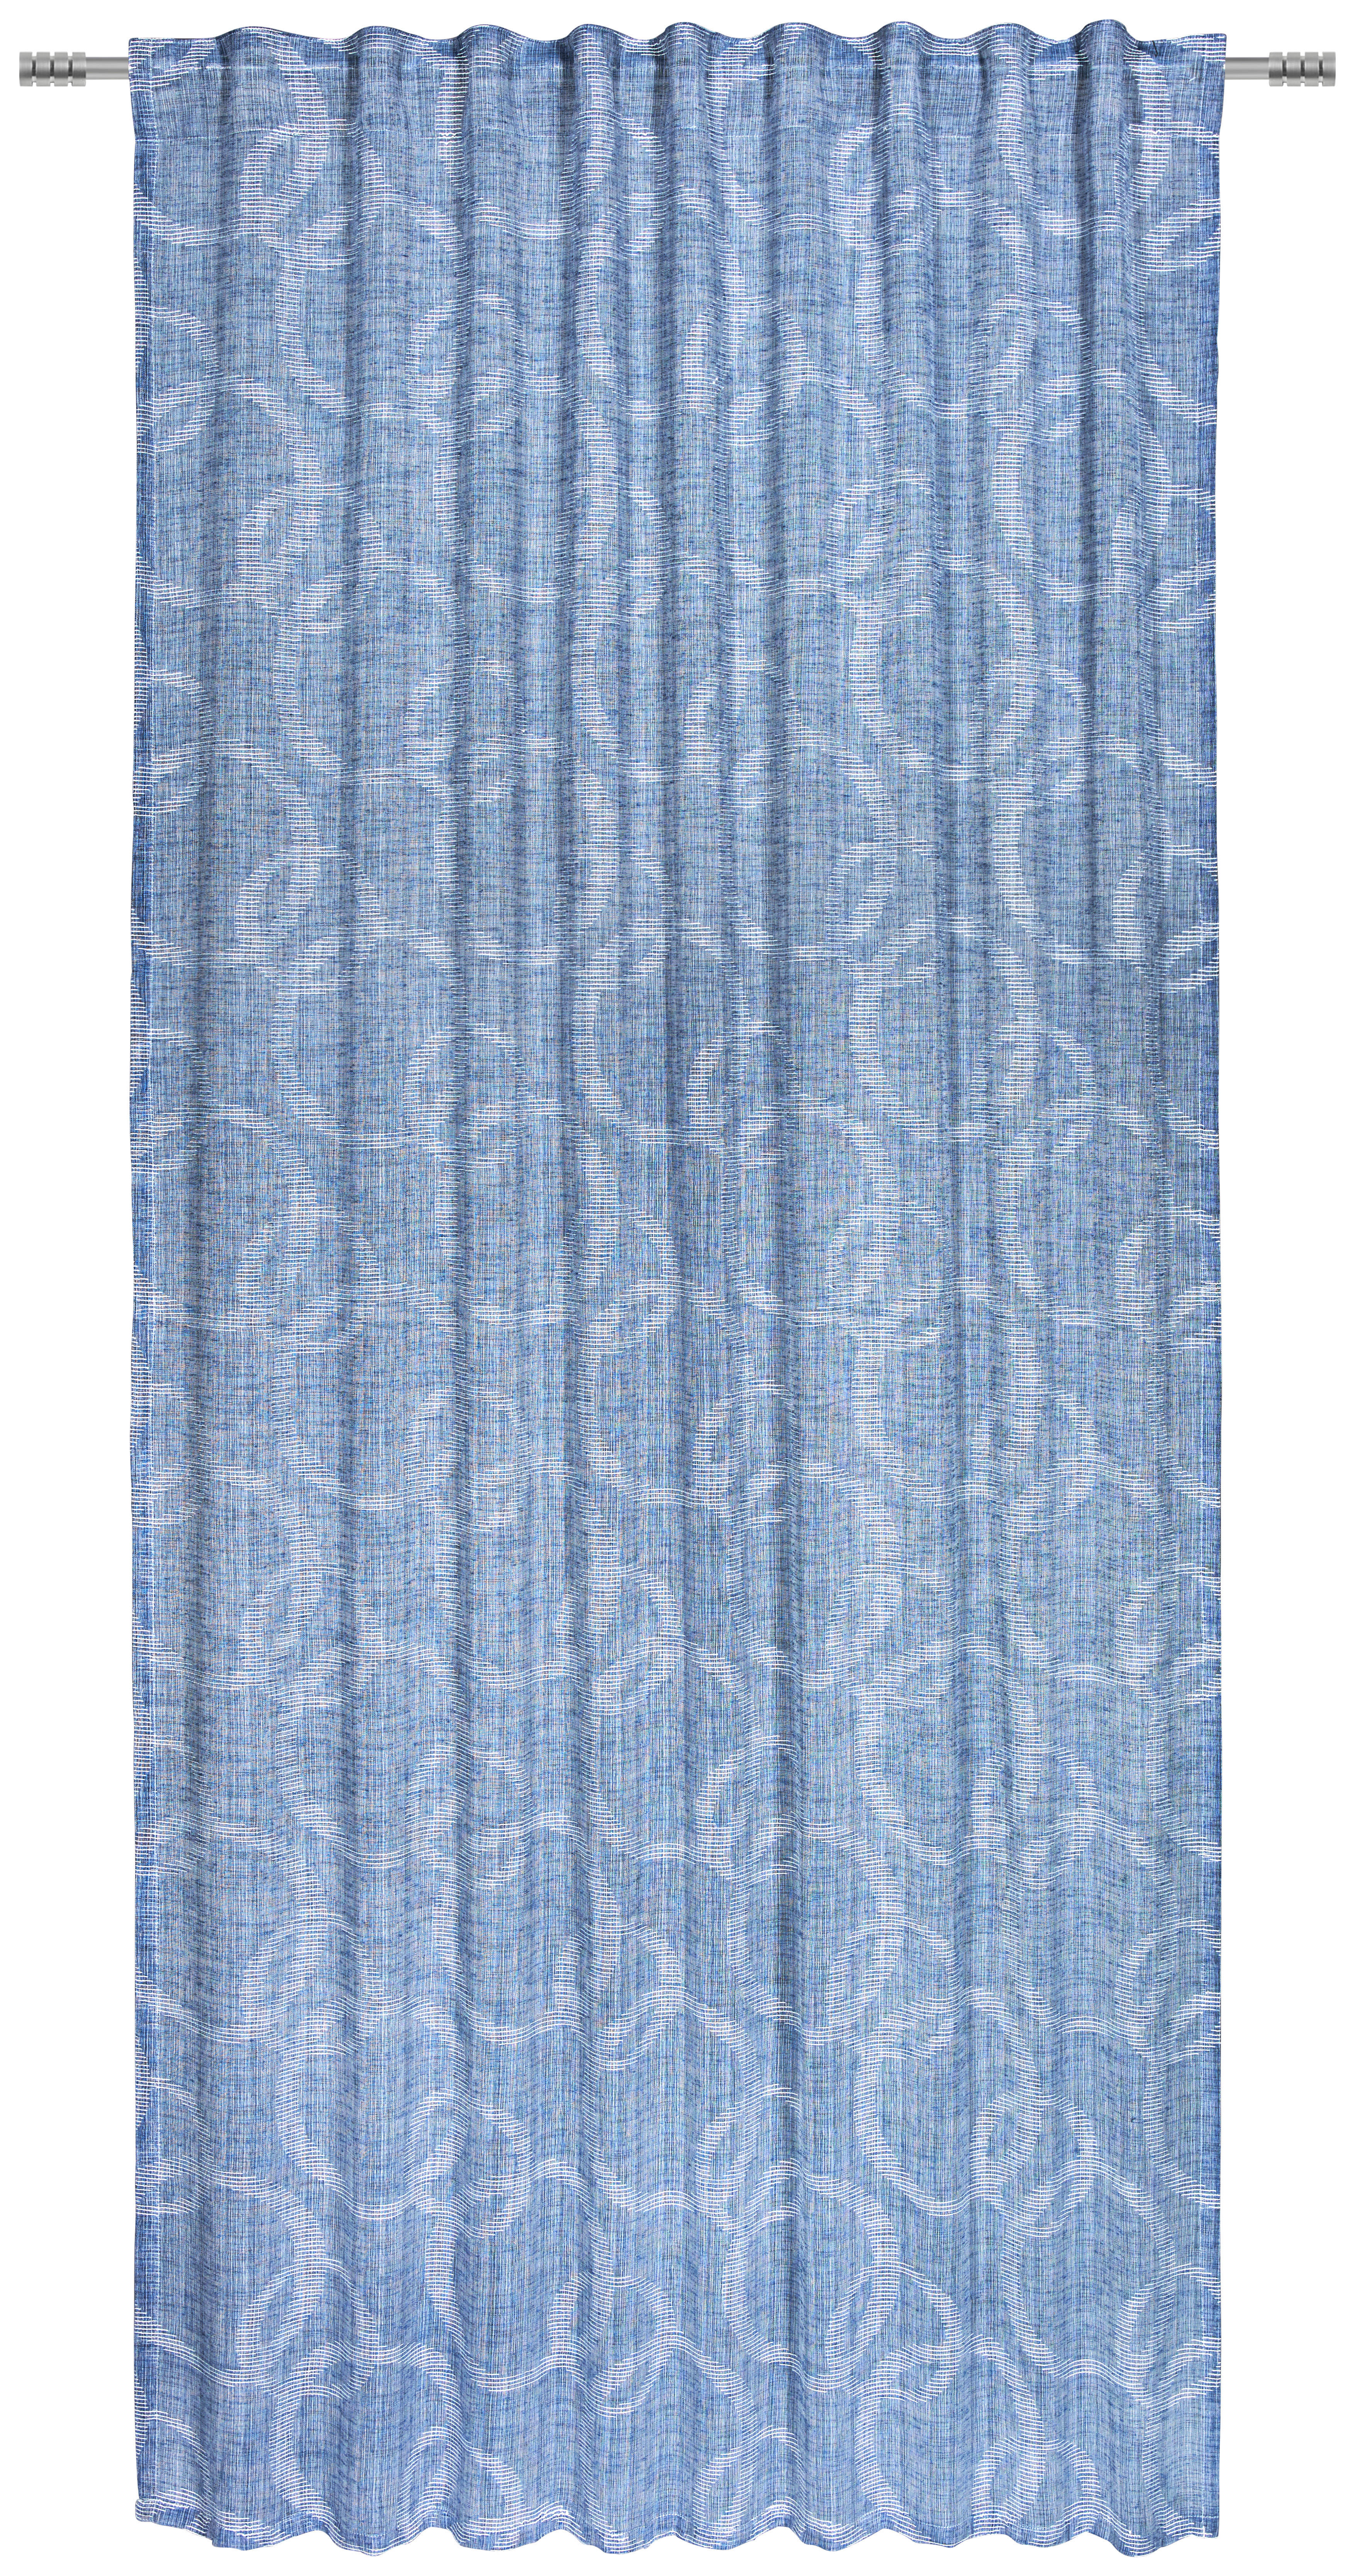 GOTOVA ZAVESA plava - plava, Konvencionalno, tekstil (140/245cm) - Esposa